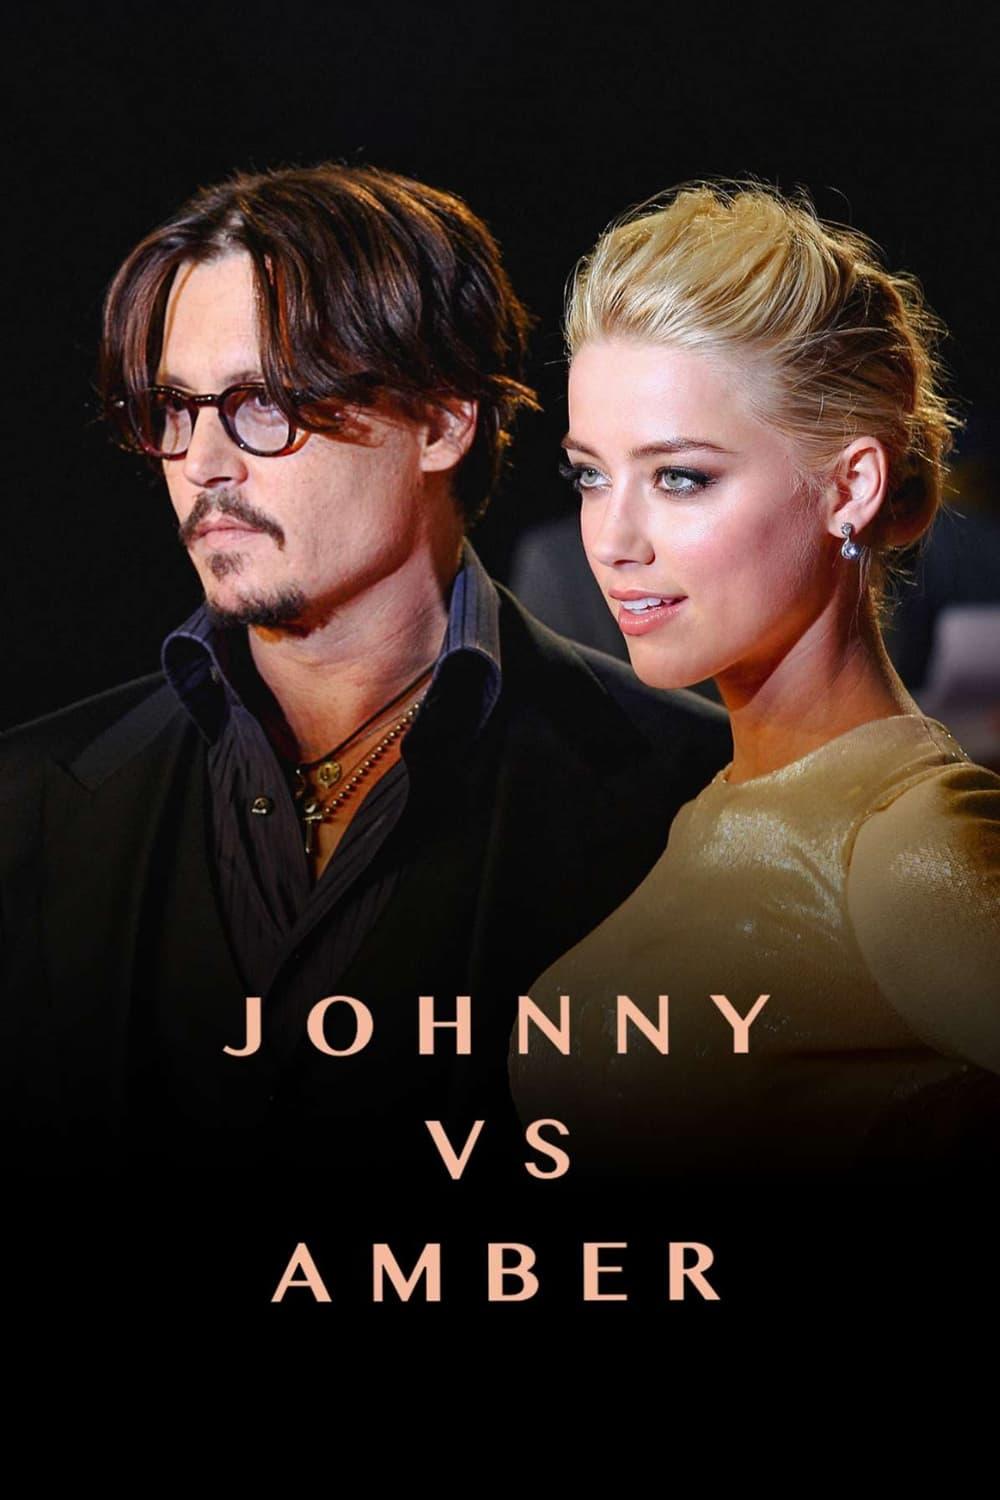 Johnny vs Amber poster